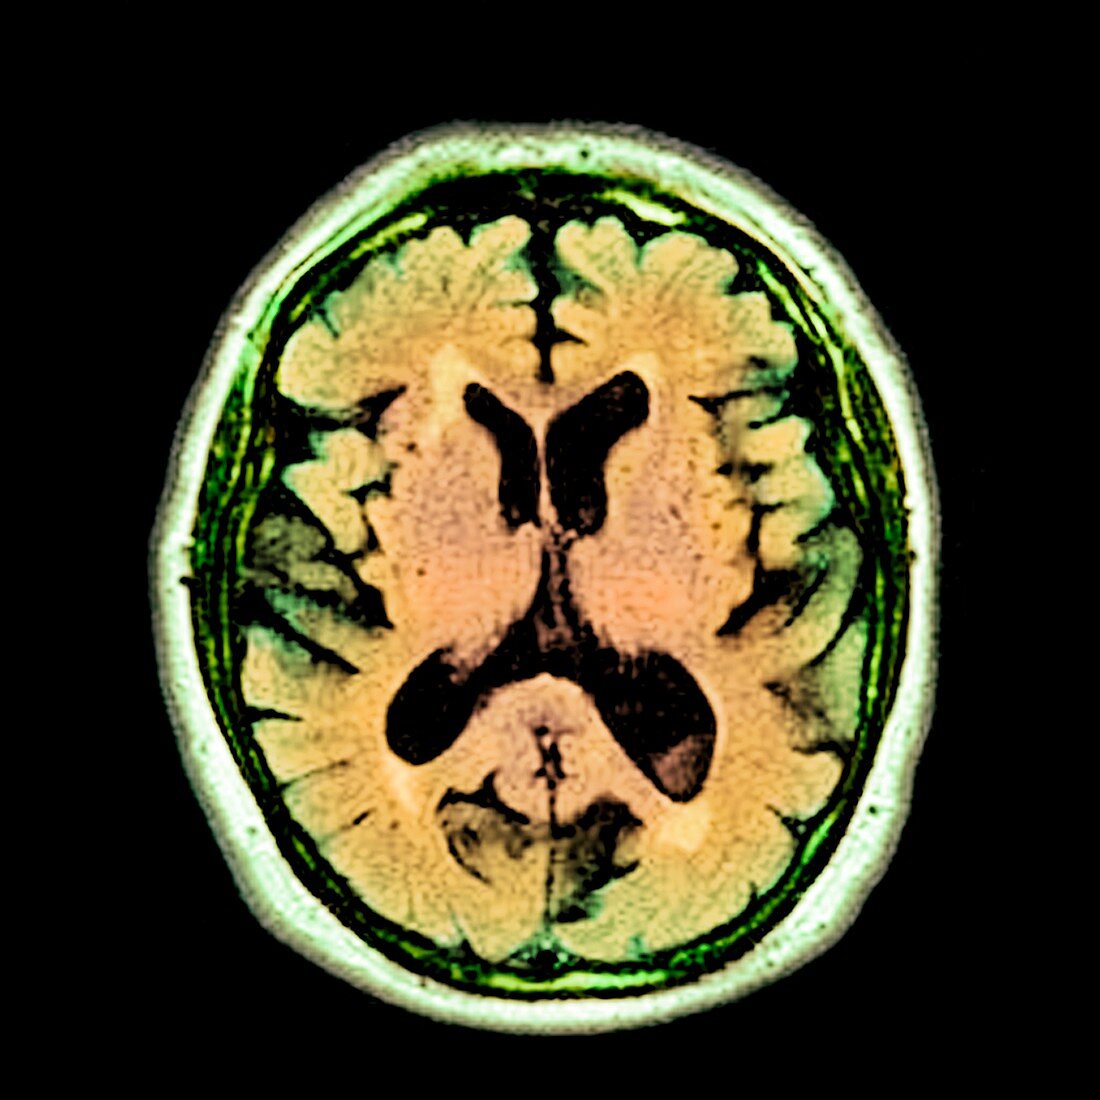 Alcoholic dementia,MRI scan